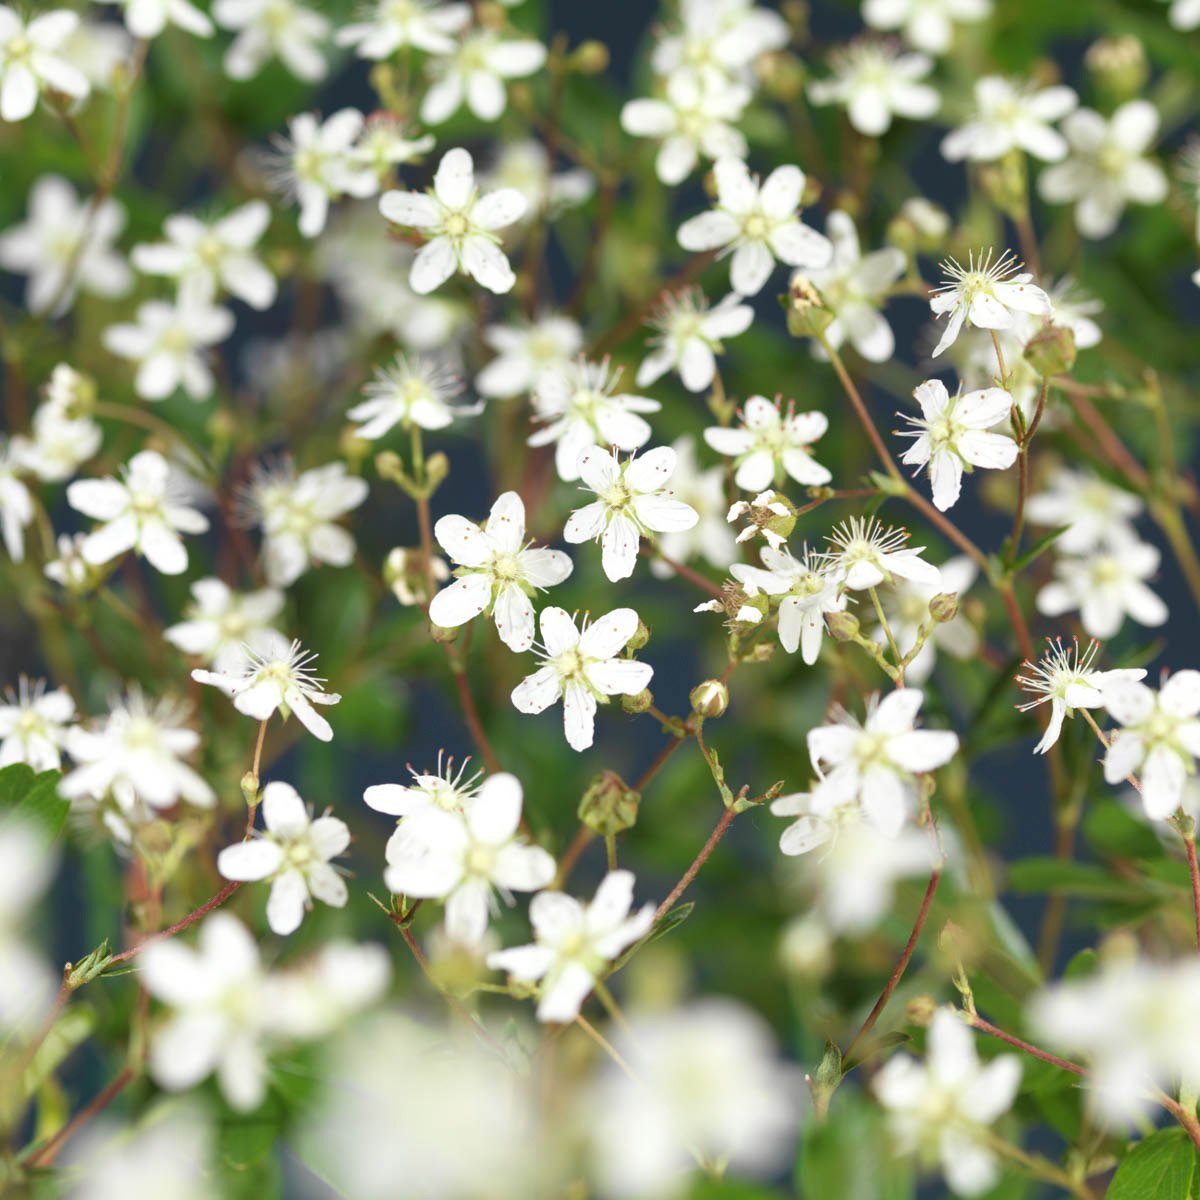 Grønnlandsmure 'Nuuk' er en delvis vintergrønn, teppedannende busk med små stjerneformede, hvite blomster